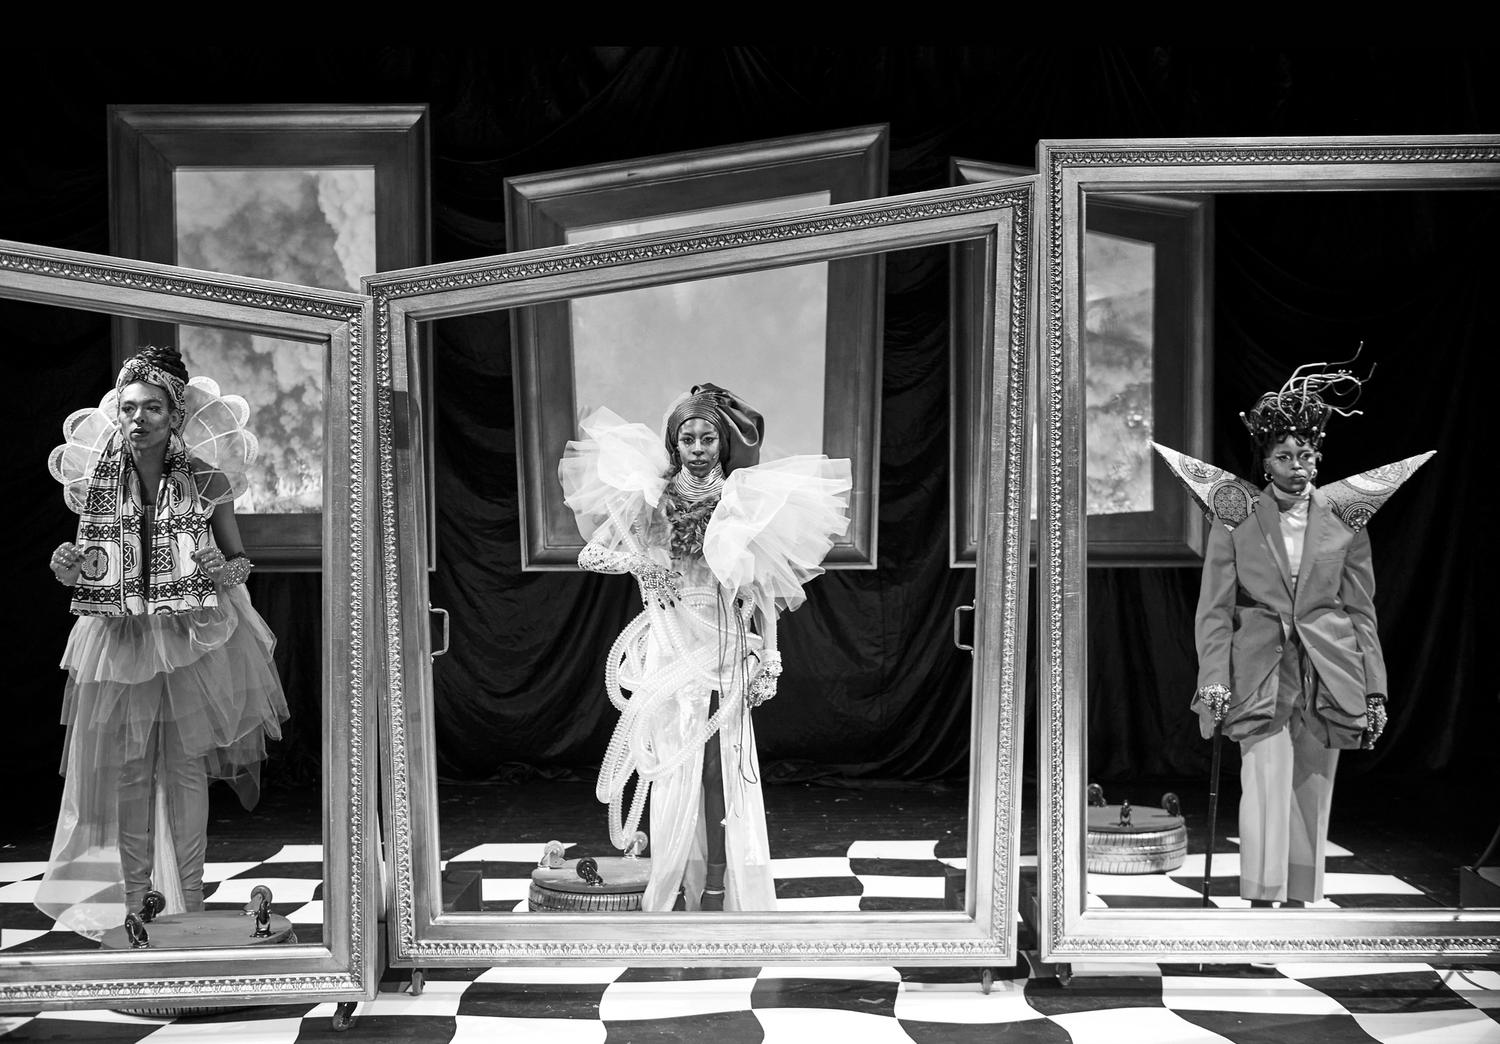 Eine Schwarz-Weiß-Fotografie zeigt eine szenische Inszenierung. Drei Personen in üppigen, prachtvollen Kostümen stehen Seite an Seite auf einer Bühne, lebensgroße Gemälderahmen umranden sie.